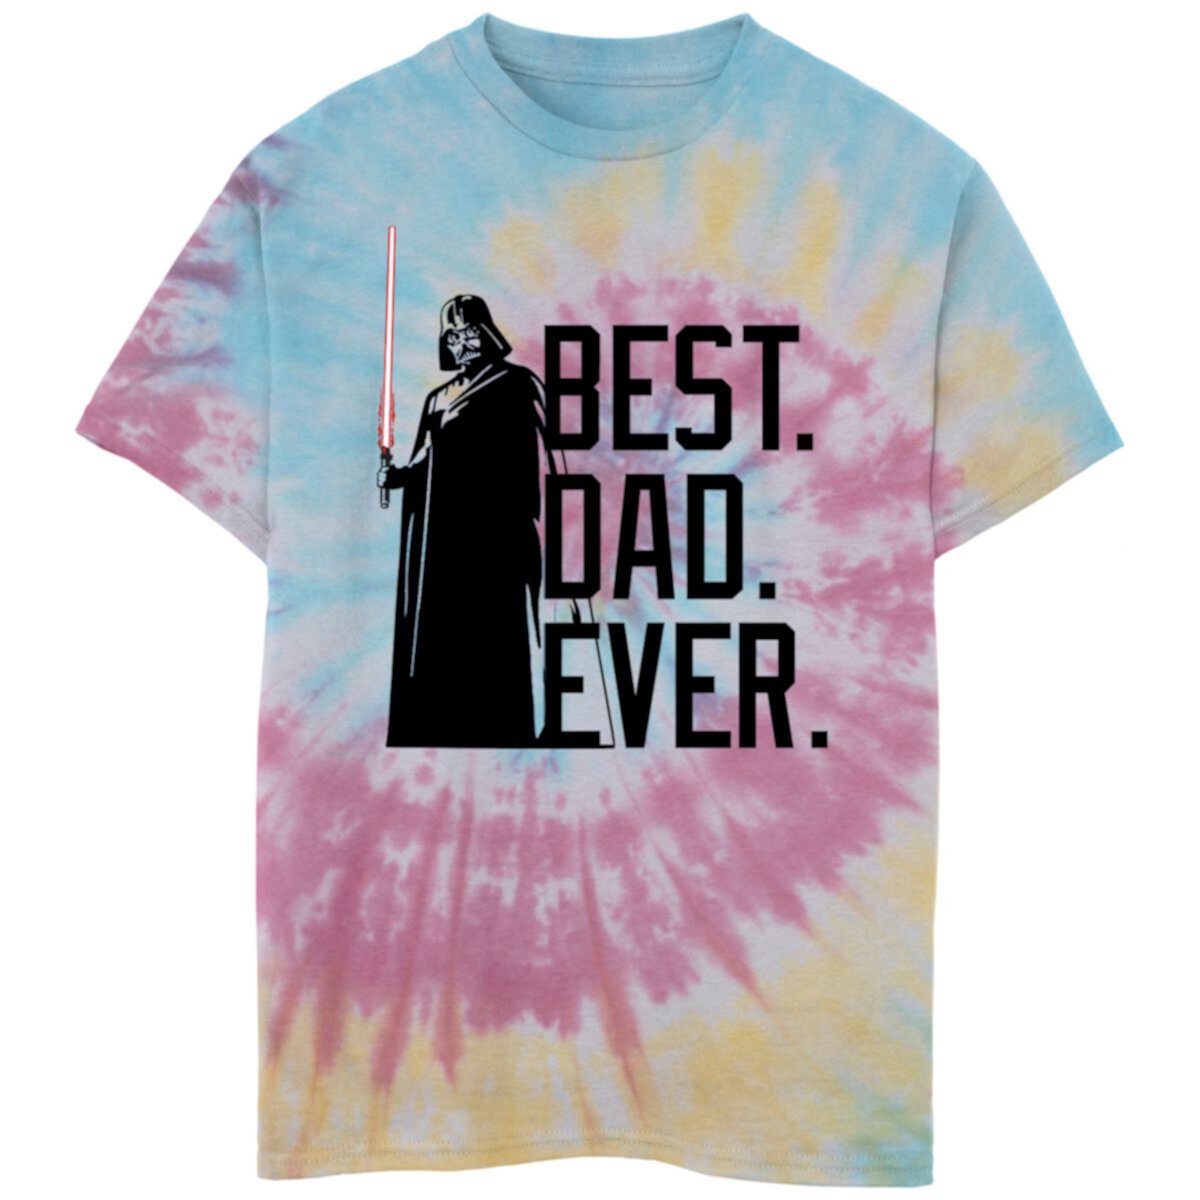 Boys 8-20 Star Wars Darth Vader Best Dad Ever Tie Dye Graphic Tee Star Wars